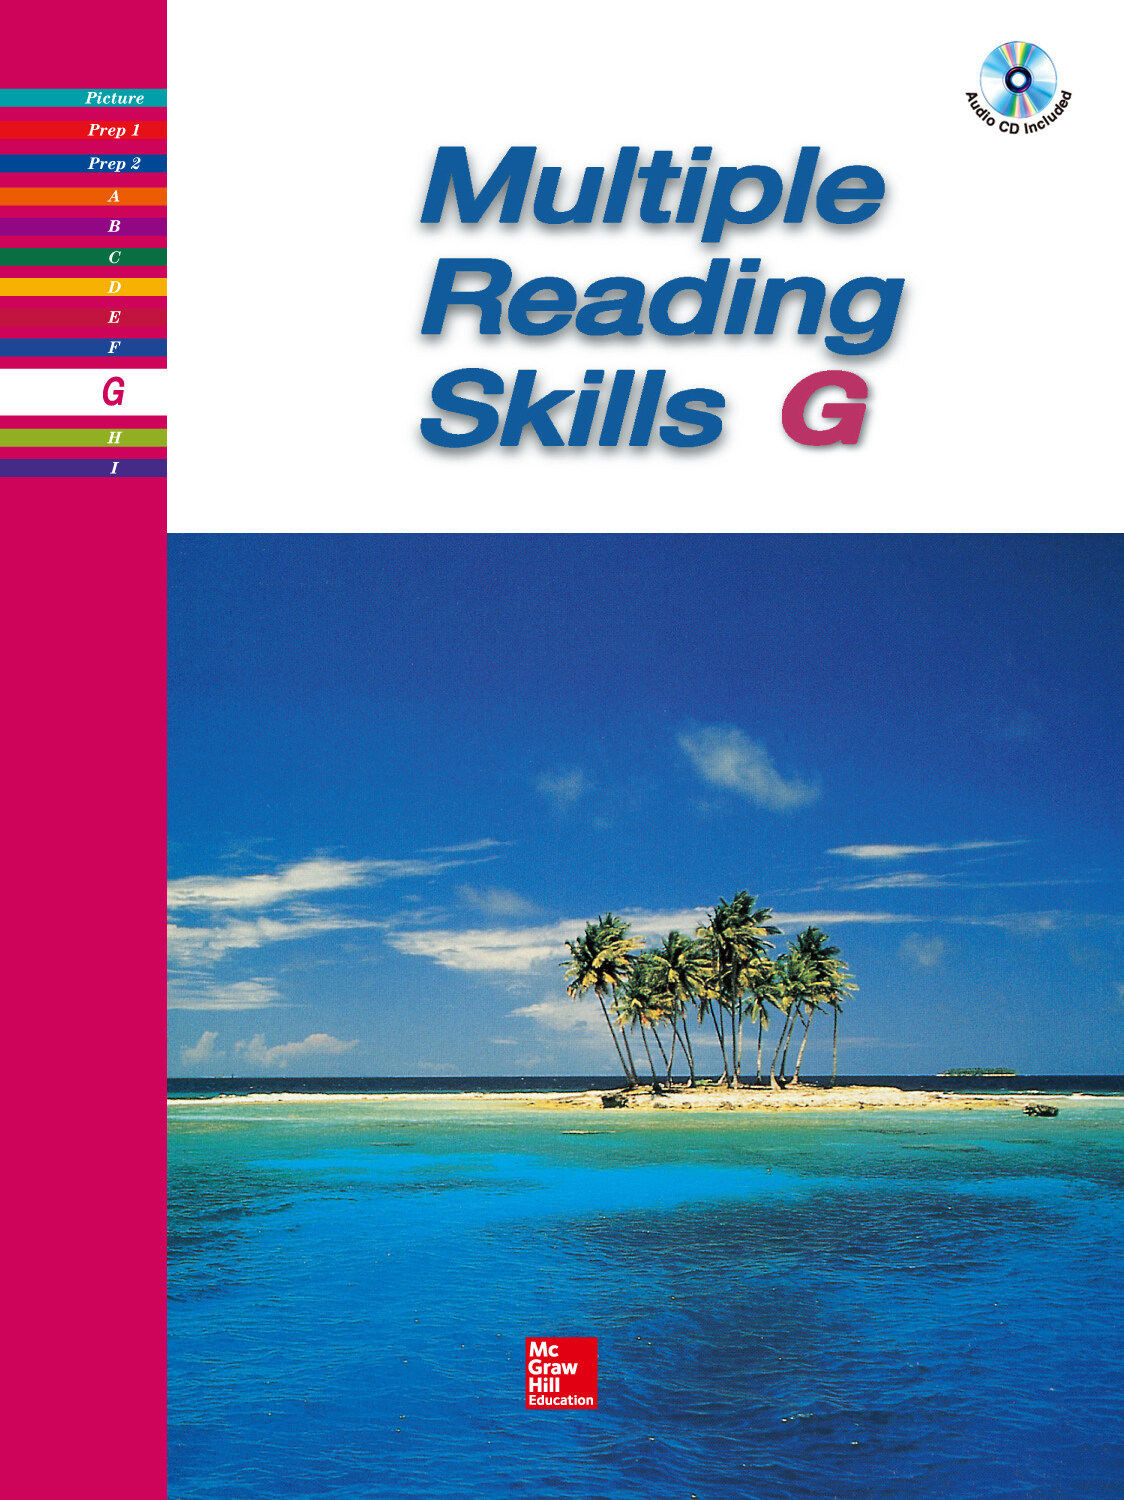 [중고] New Multiple Reading Skills G (Paperback + CD 1장, New Edition)